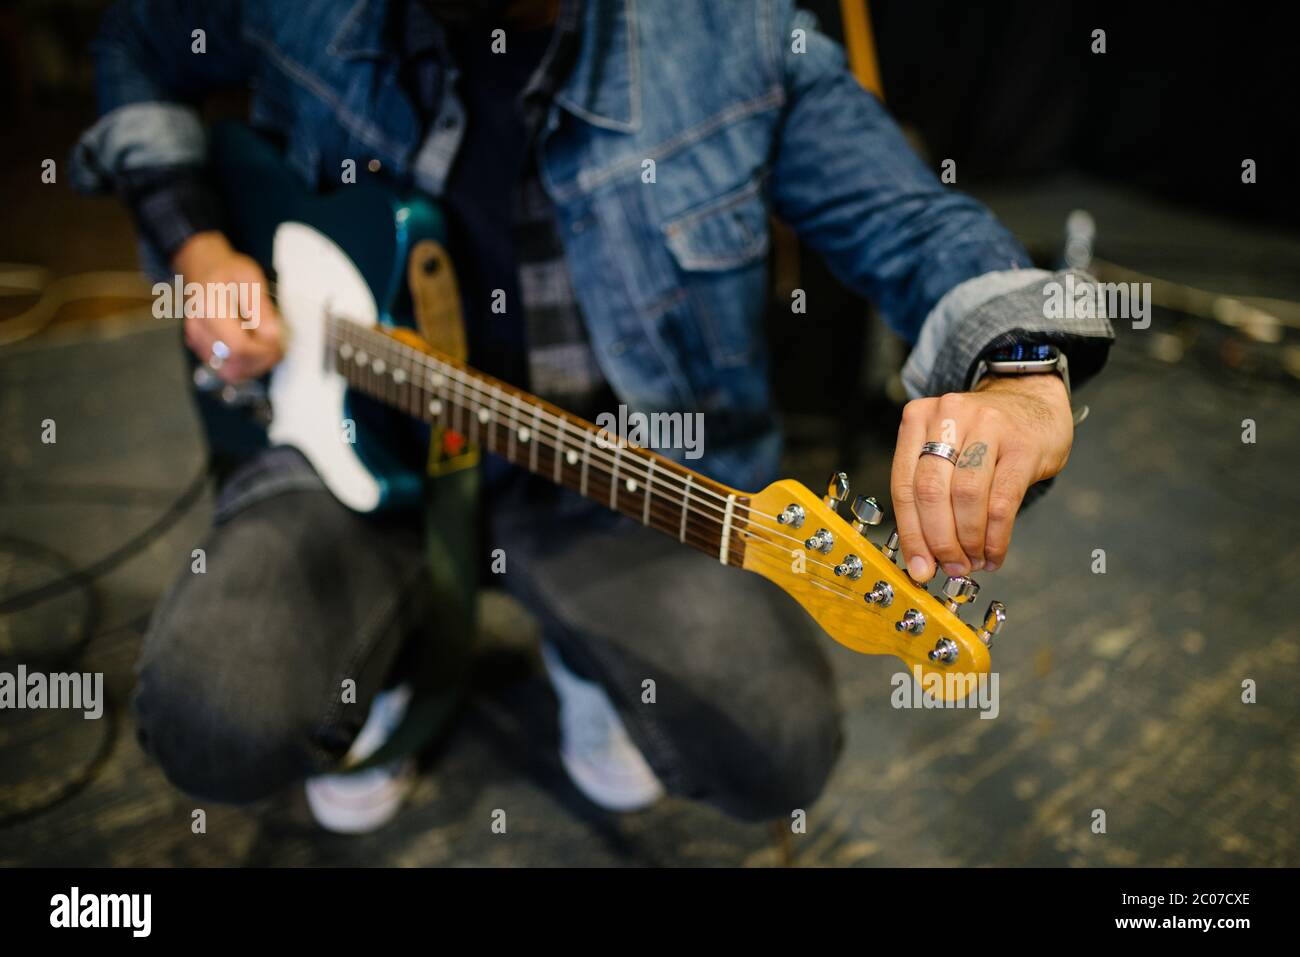 Young guitarist tuning his guitar closeup. Stock Photo